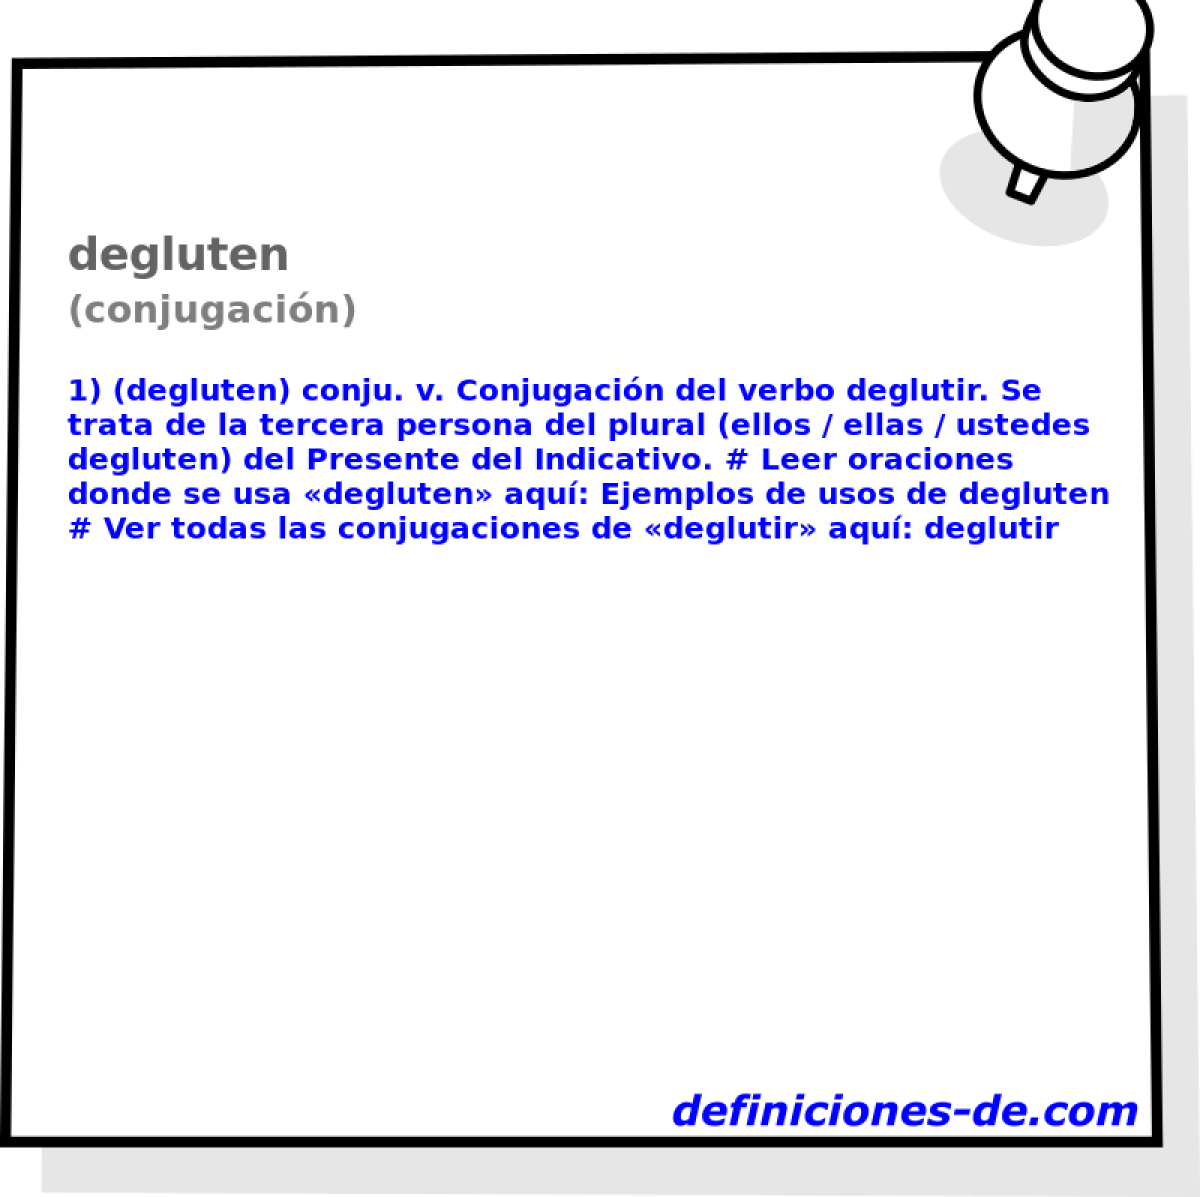 degluten (conjugacin)